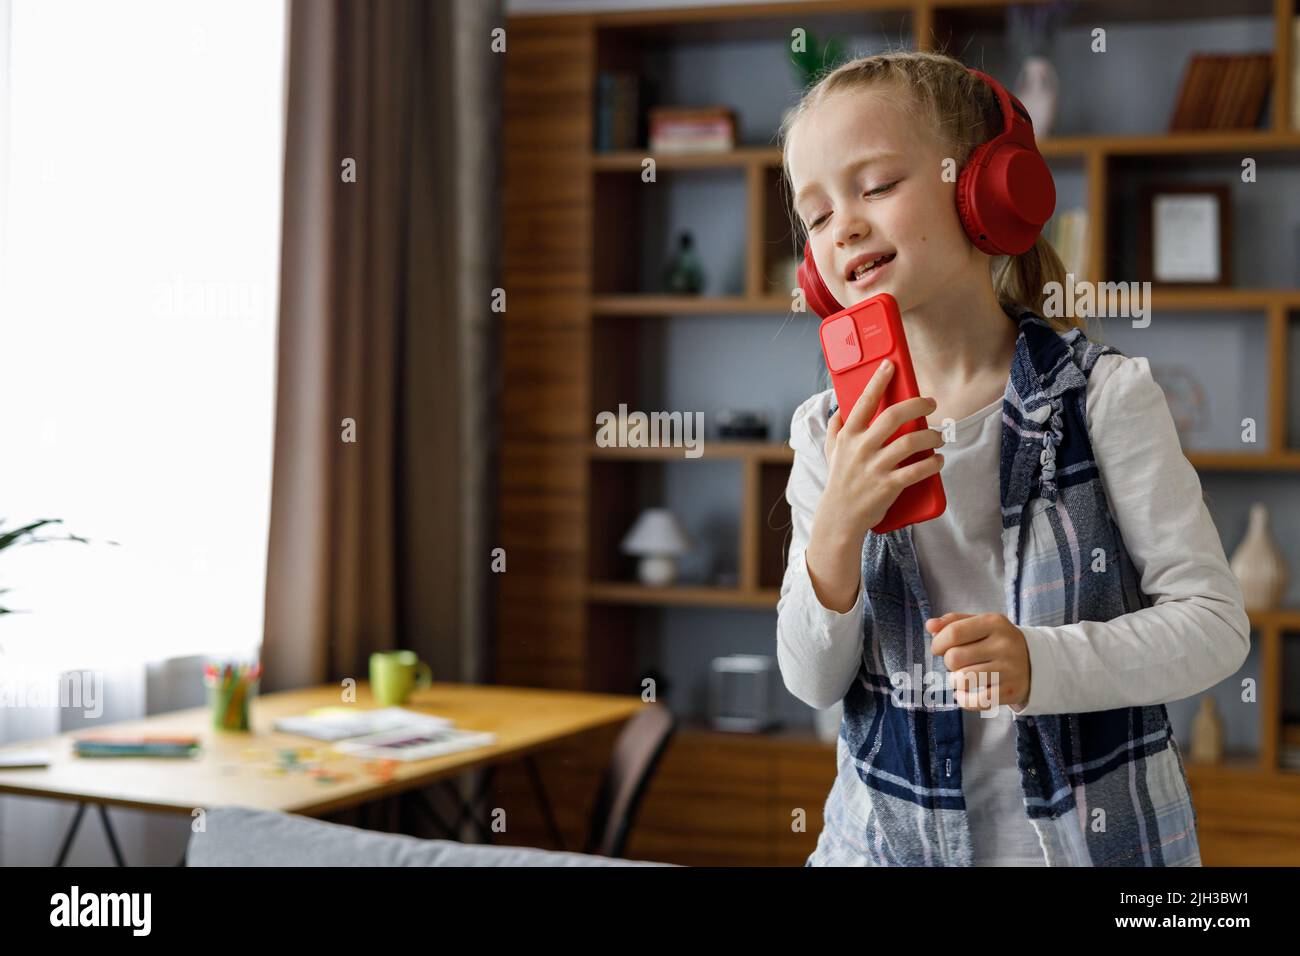 Glückliches kleines Mädchen mit roten Ohrhörern, das mit einem Smartphone wie einem Mikrofon tanzt und singt. Nettes Kind mit Spaß springen auf Trainer. Freizeit zu Hause Stockfoto